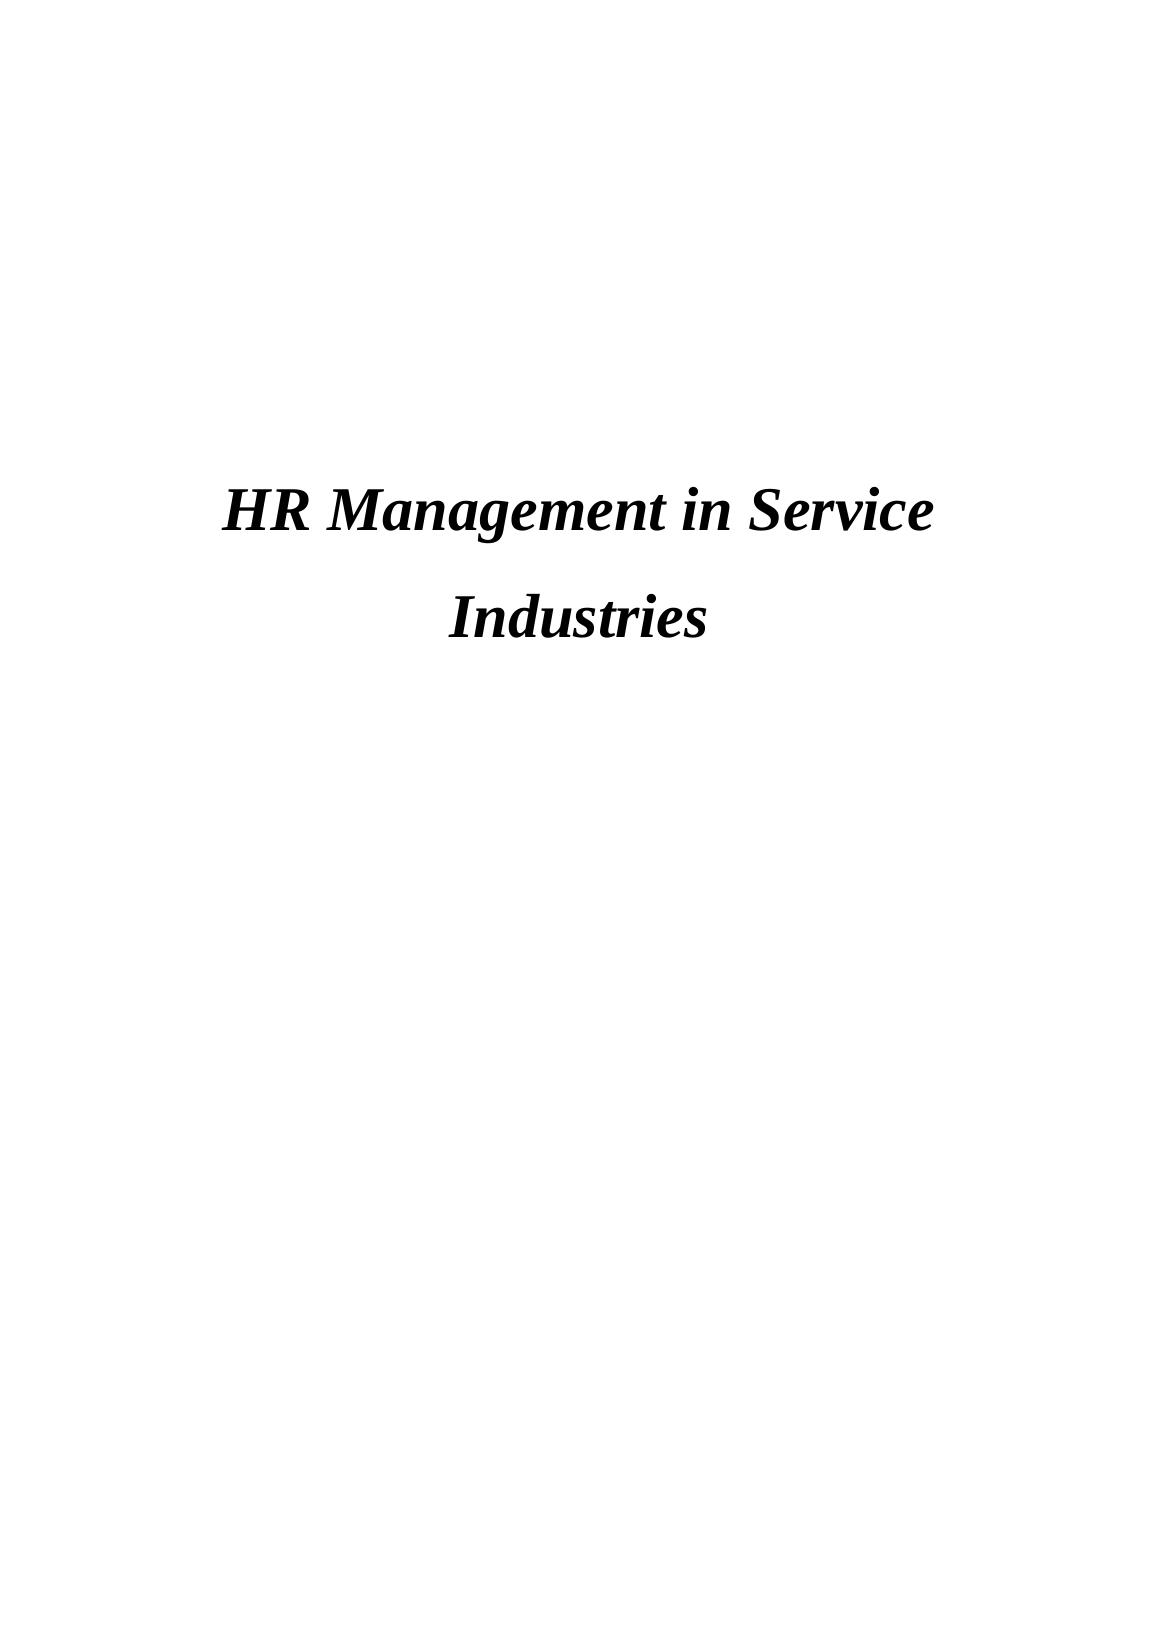 HR Management in Service Industries_1